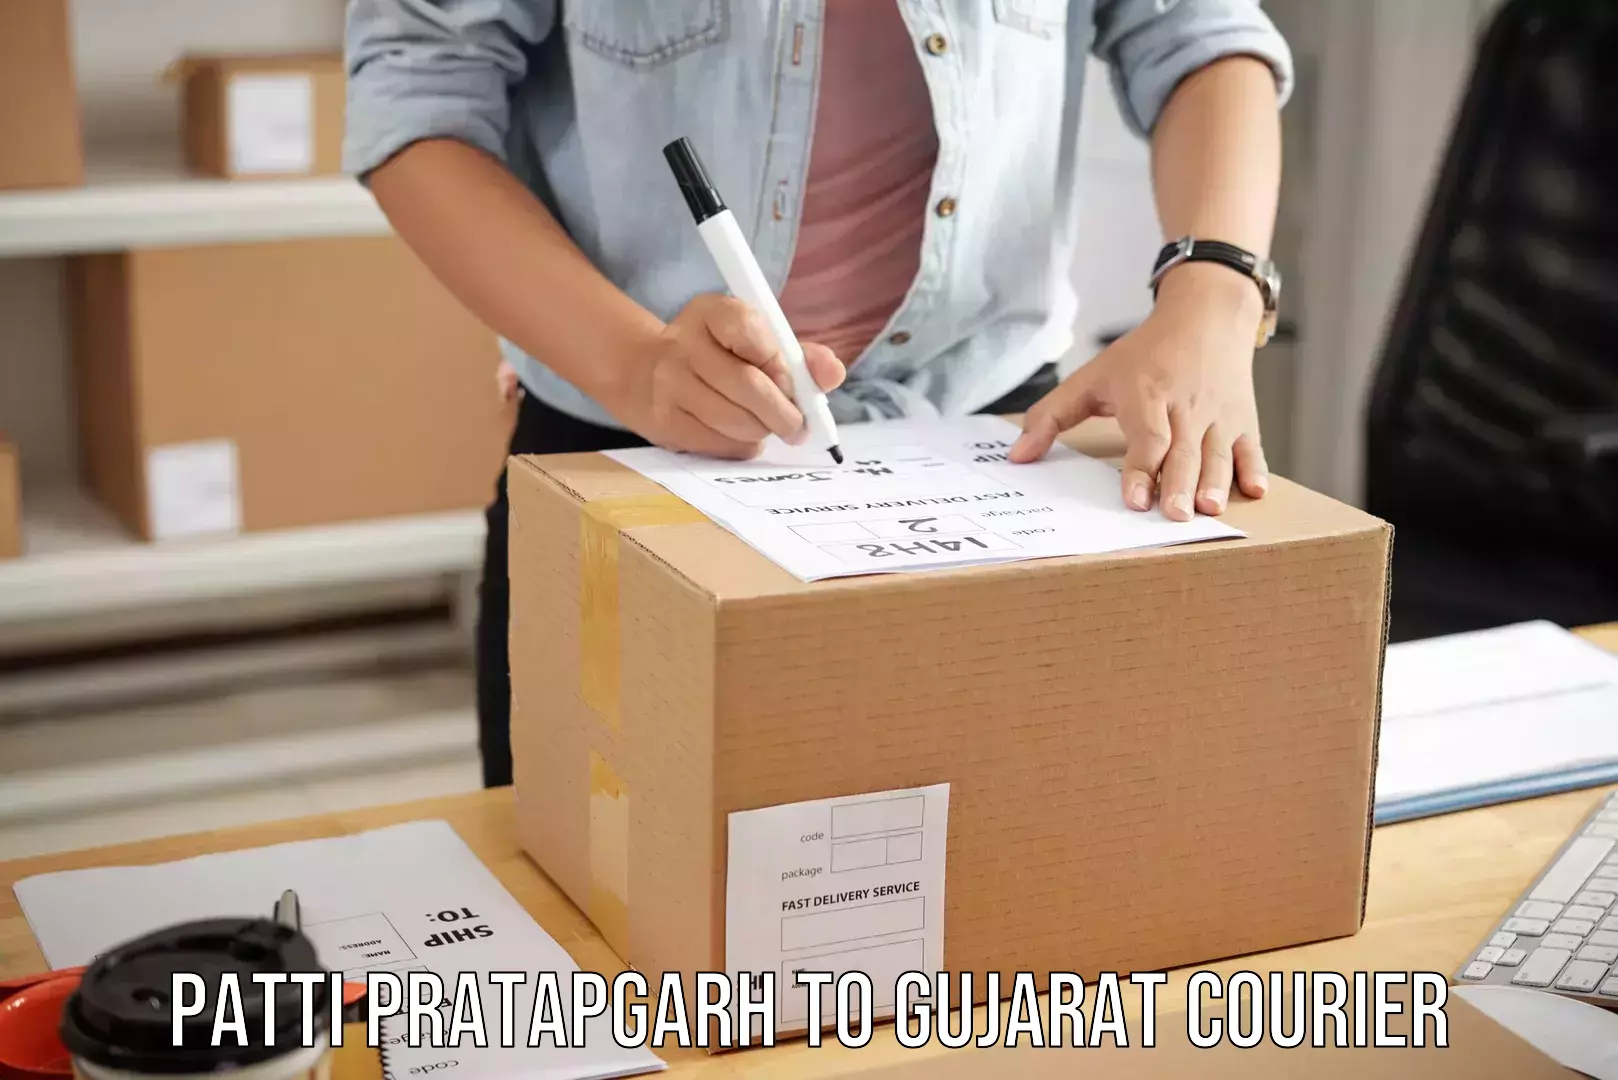 Global baggage shipping in Patti Pratapgarh to Dhanera